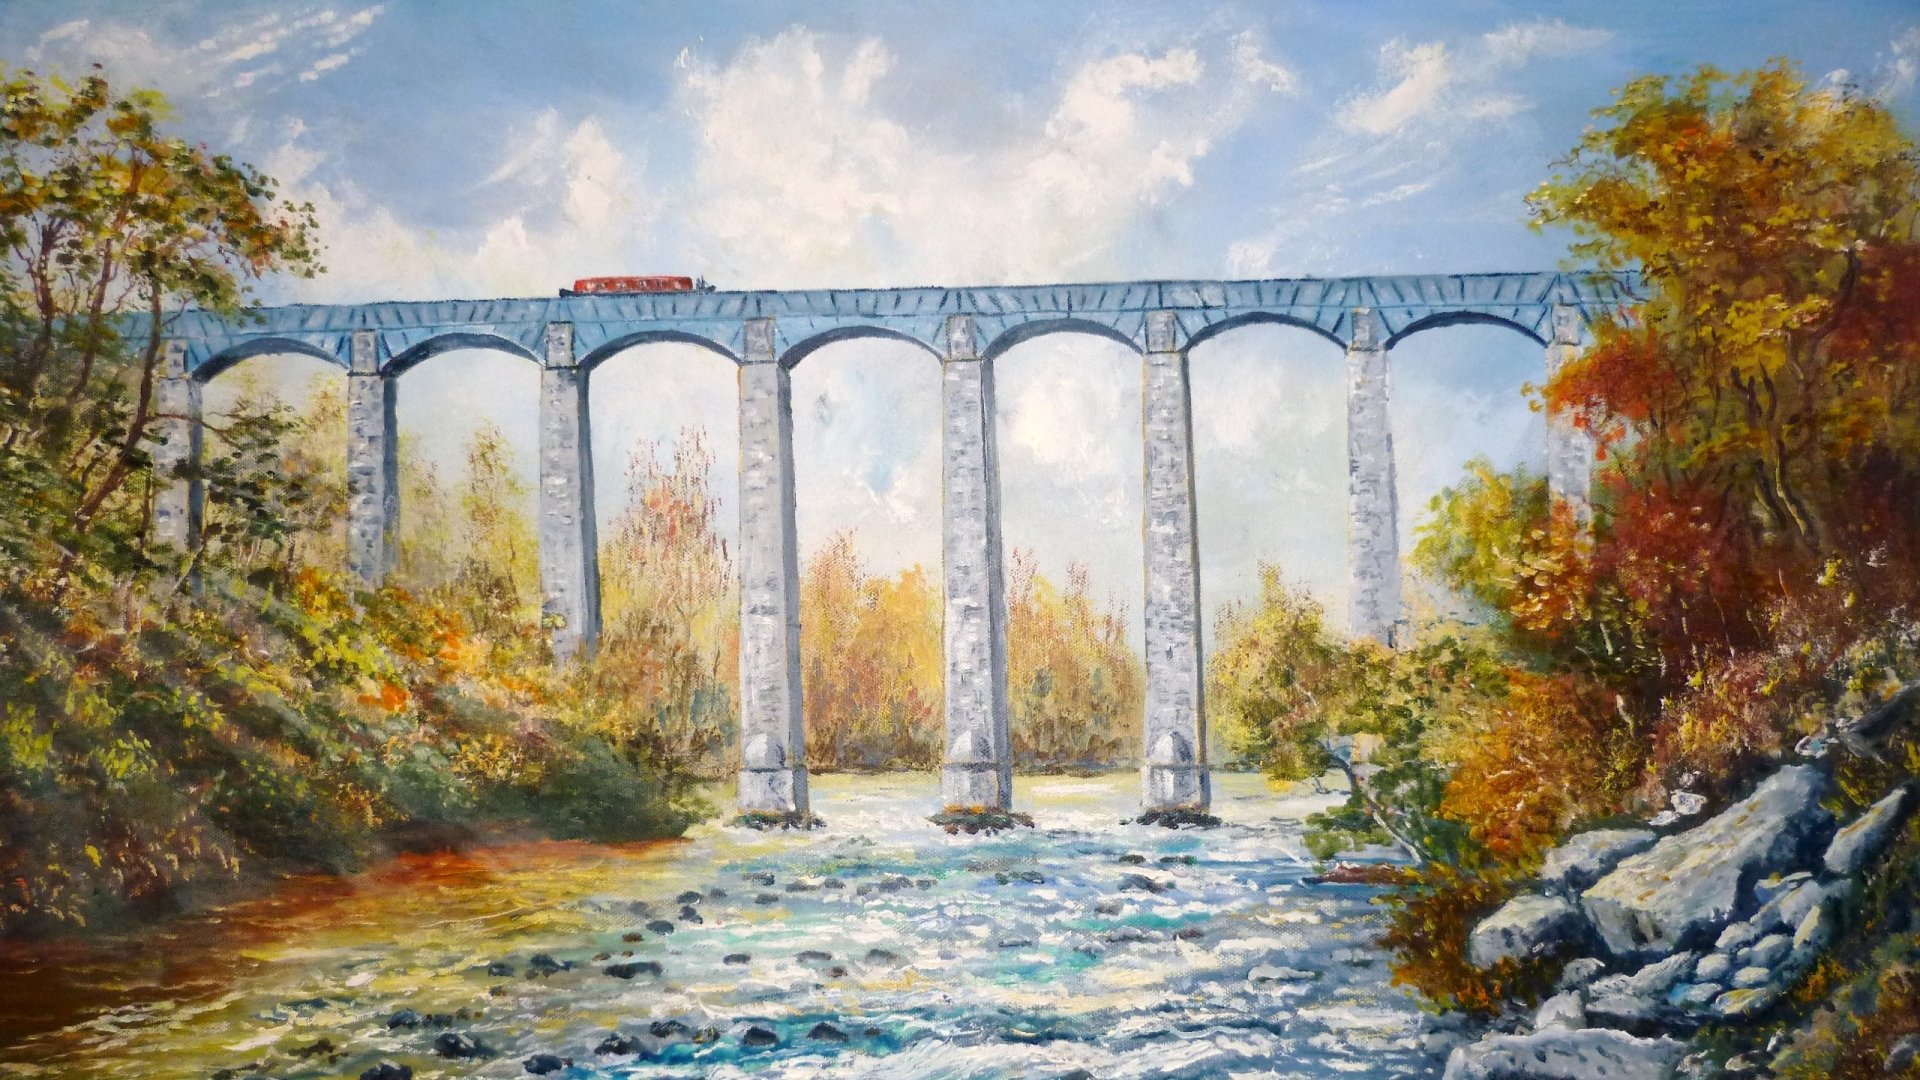 Pontcysyllte Aqueduct Wallpapers